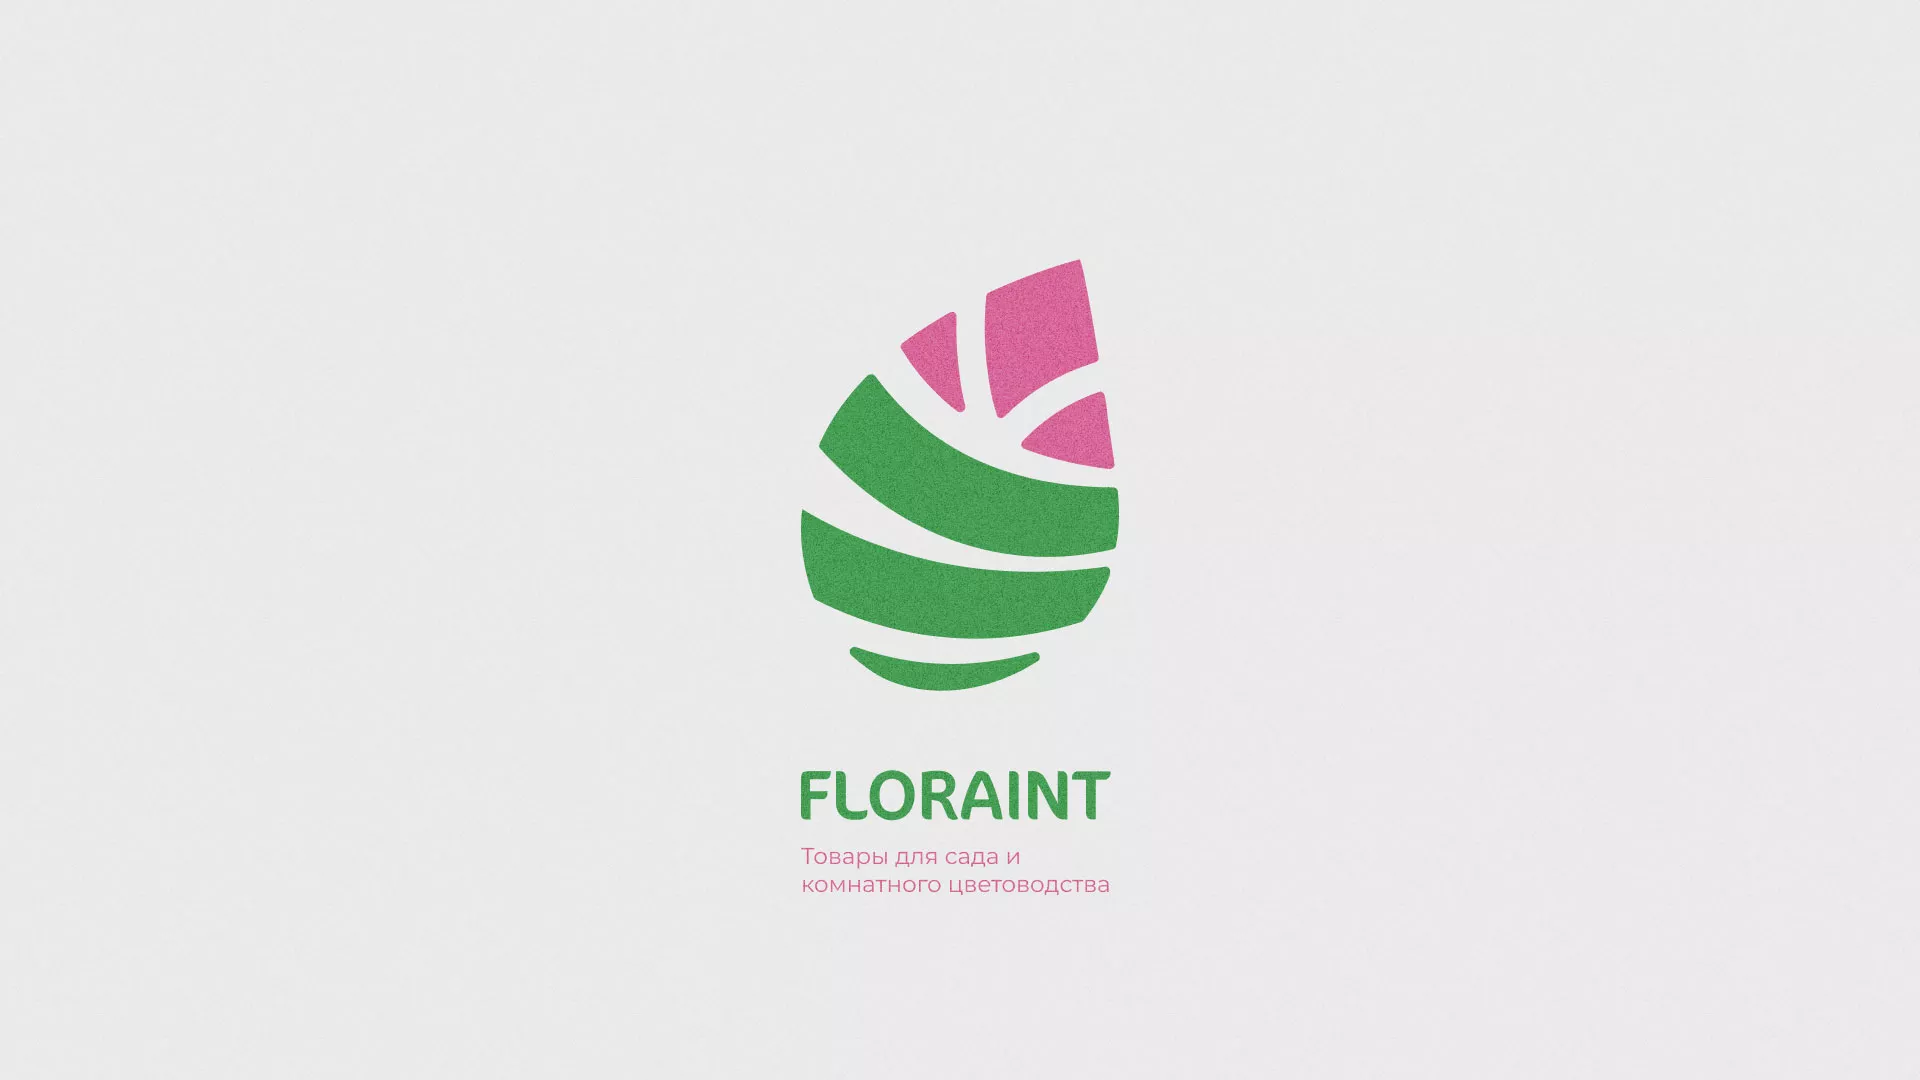 Разработка оформления профиля Instagram для магазина «Floraint» в Коммунаре